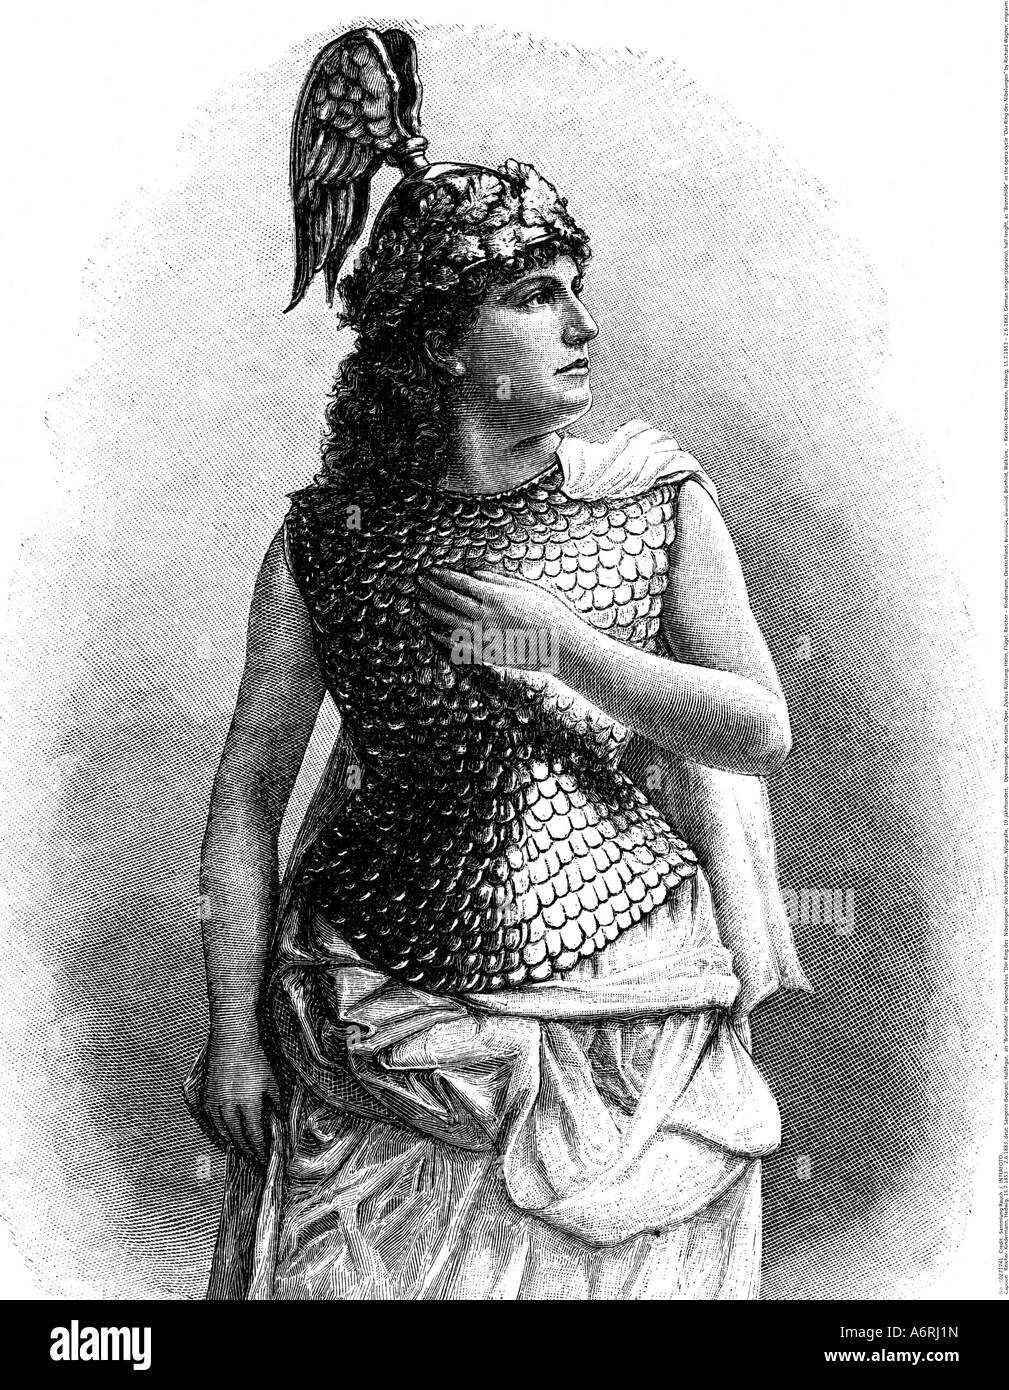 "Reicher-Kindermann, Edvige, 15.7.1853 - 2.6.1883, cantante tedesca (soprano), a mezza lunghezza e come 'Brünnhilde' nel ciclo di opera ' Foto Stock